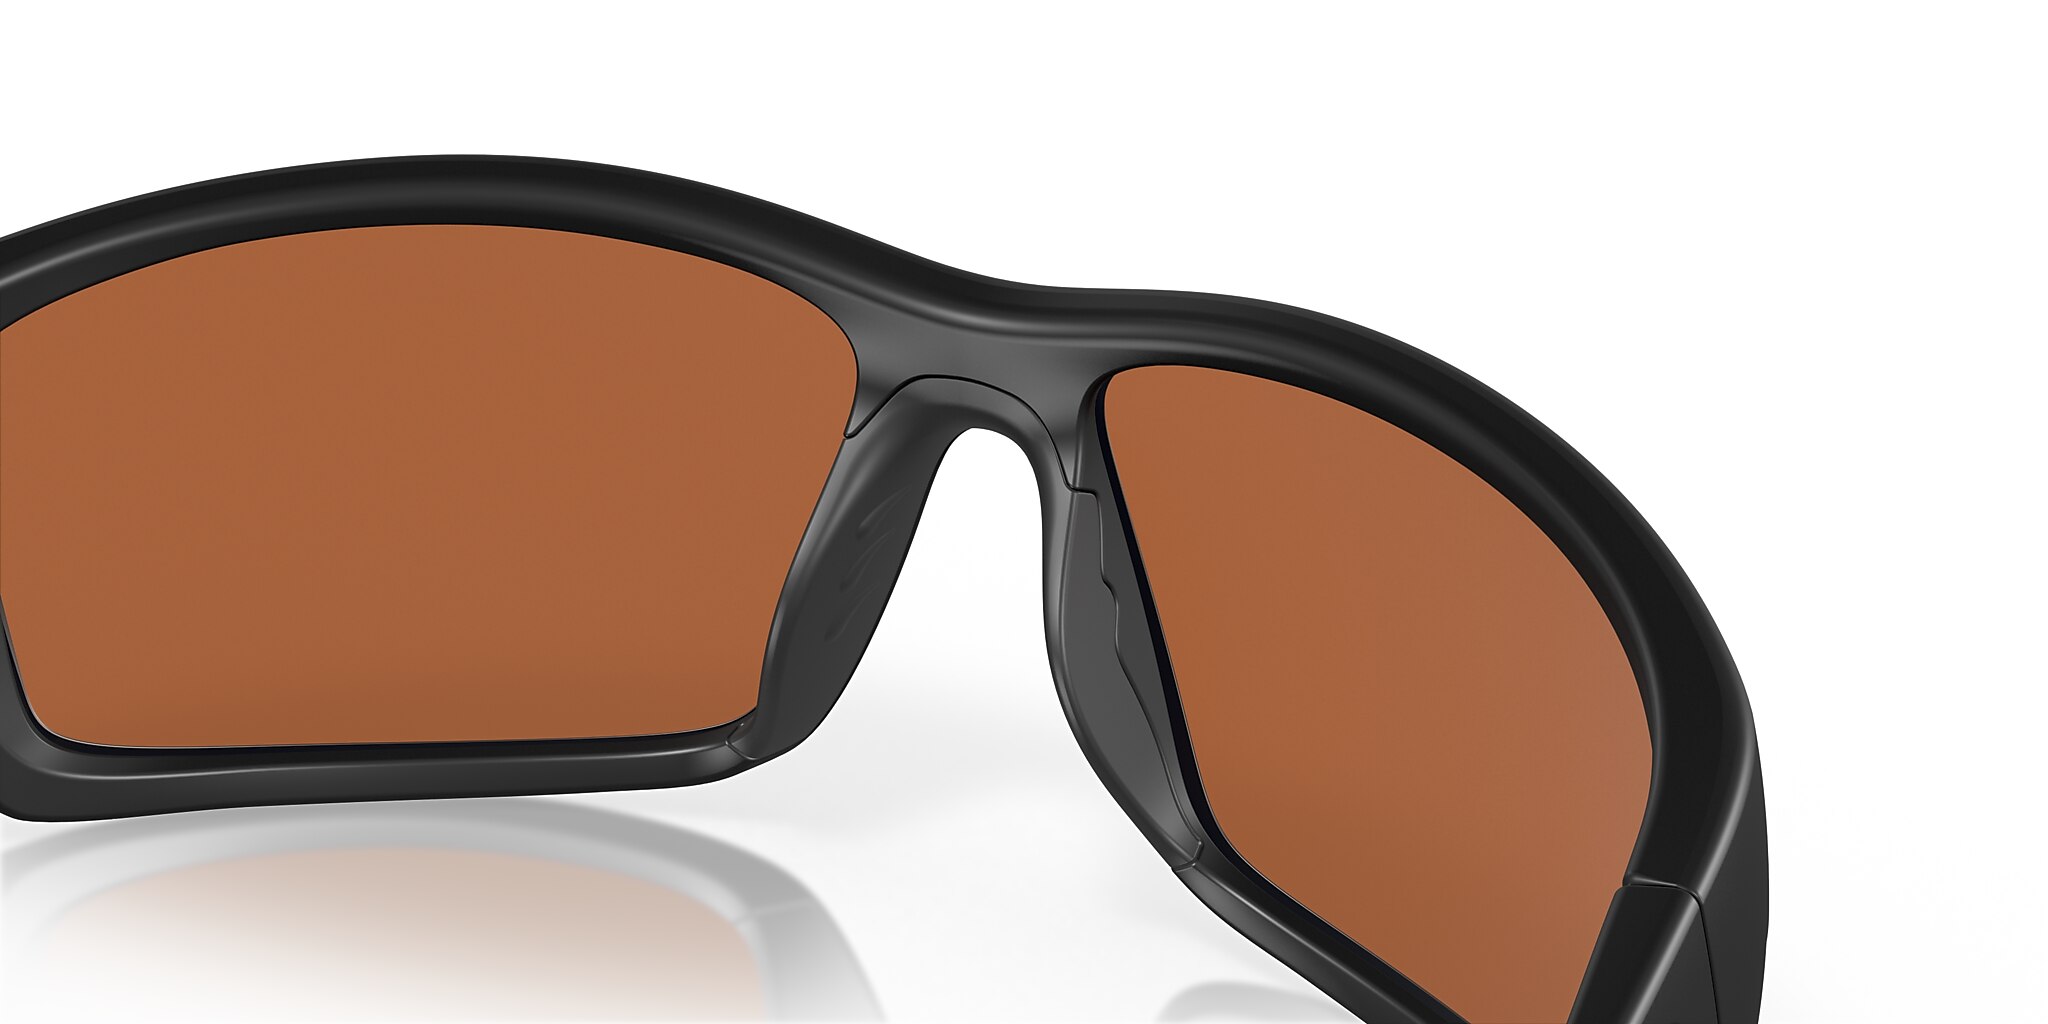 Reefton Polarized Sunglasses in Green Mirror | Costa Del Mar®